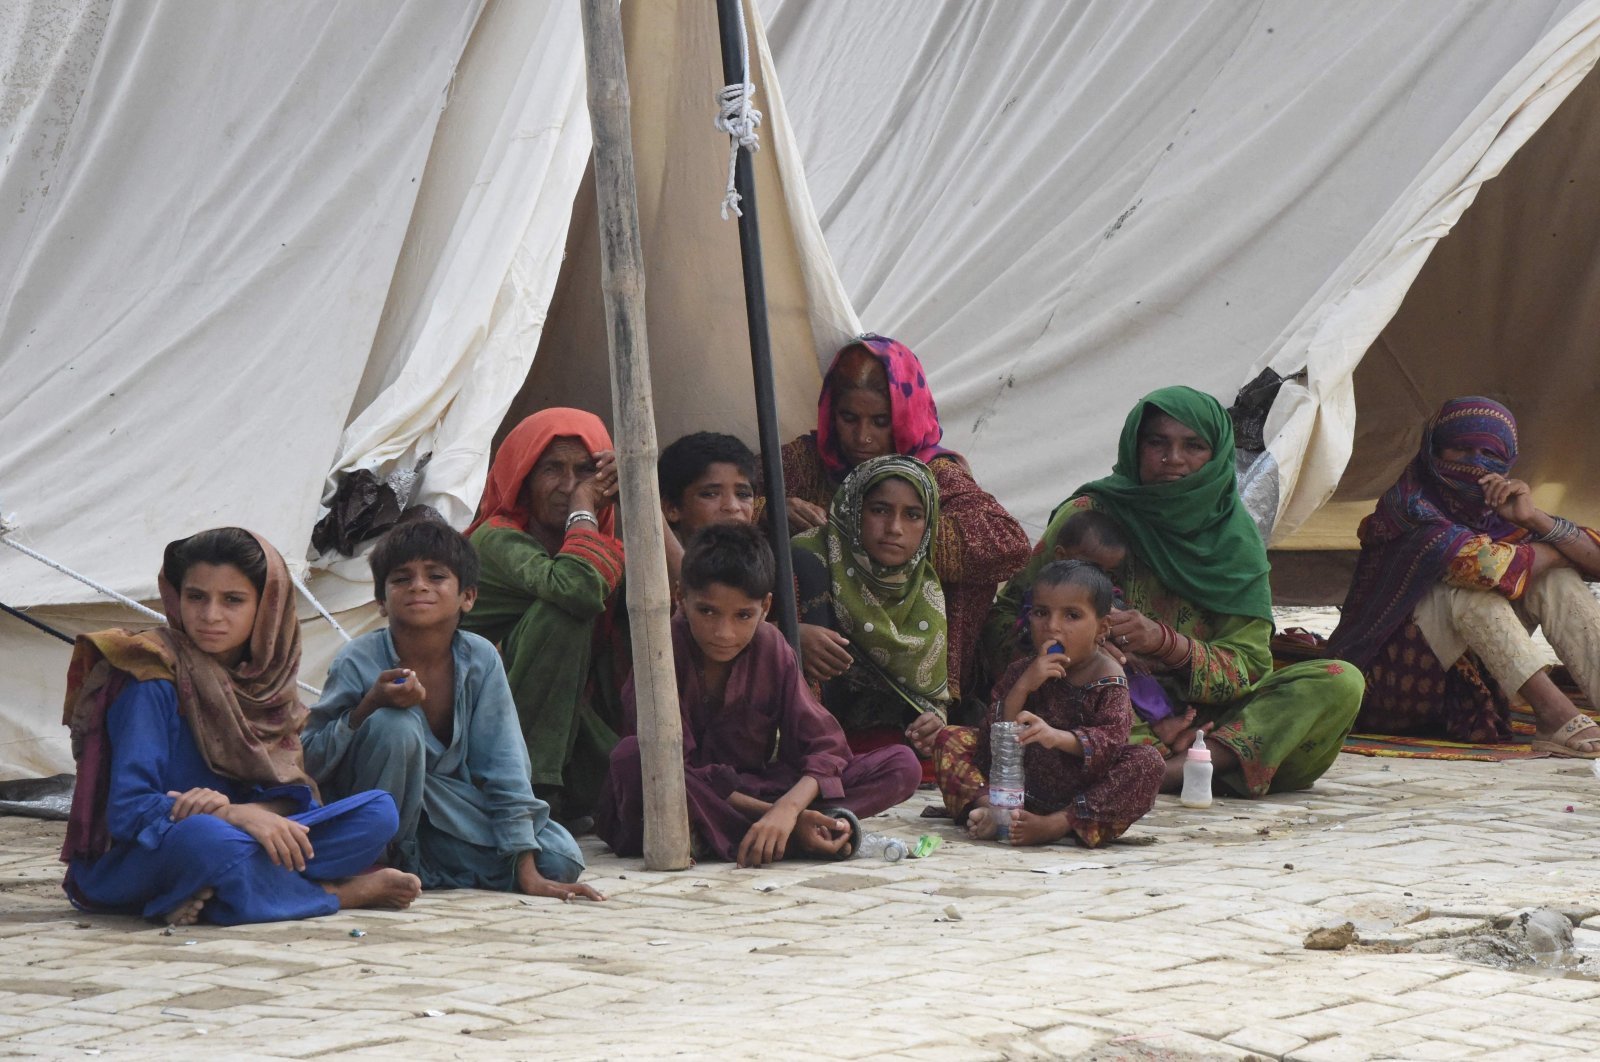 Kematian meningkat di banjir Pakistan saat para penyintas menghadapi penyakit, gigitan ular